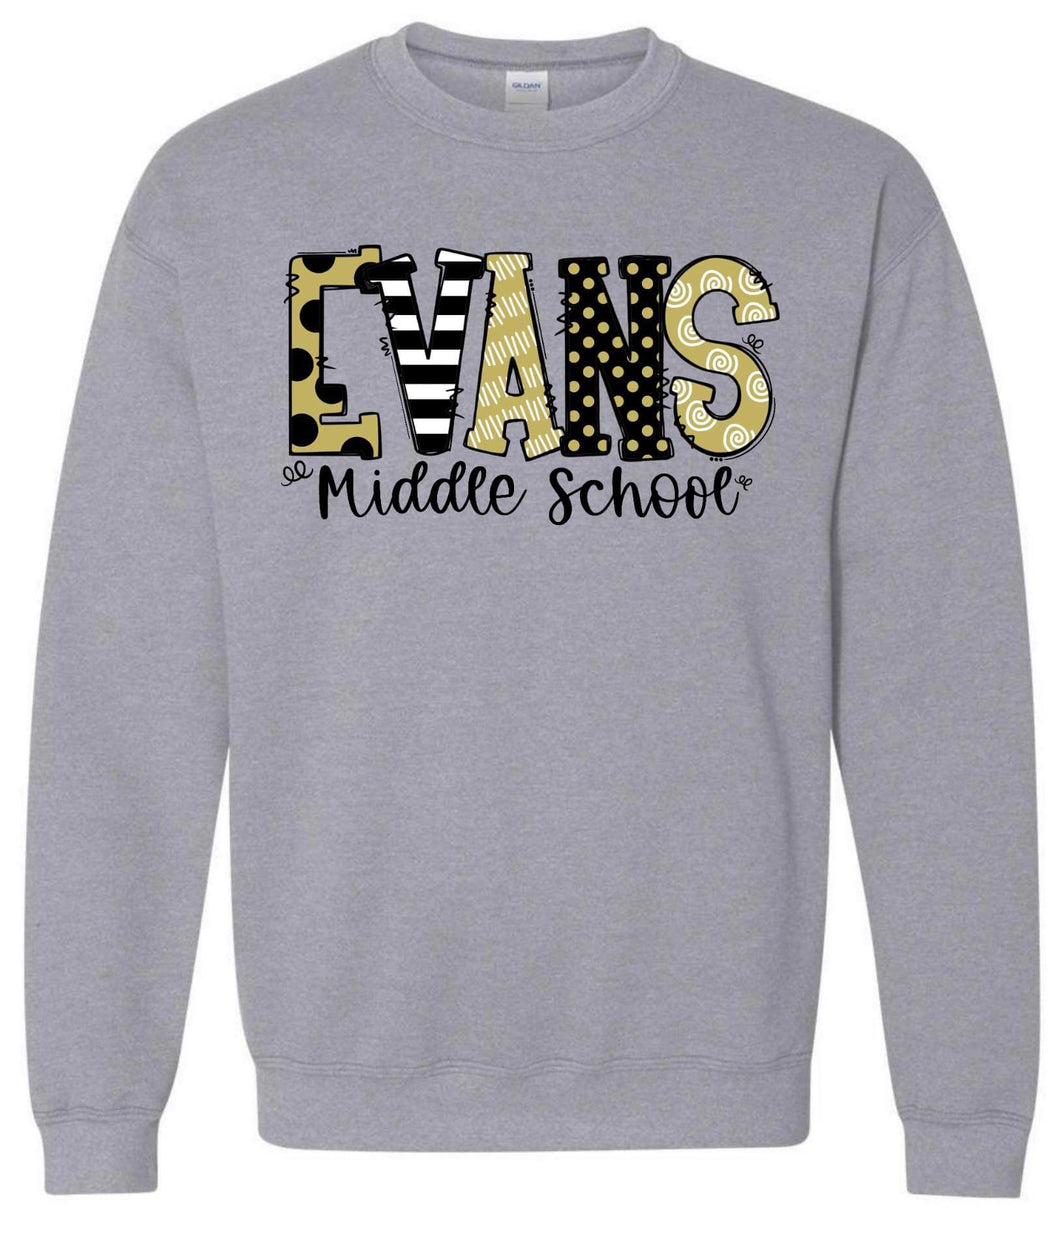 Evans Middle School Doodle Sweatshirt